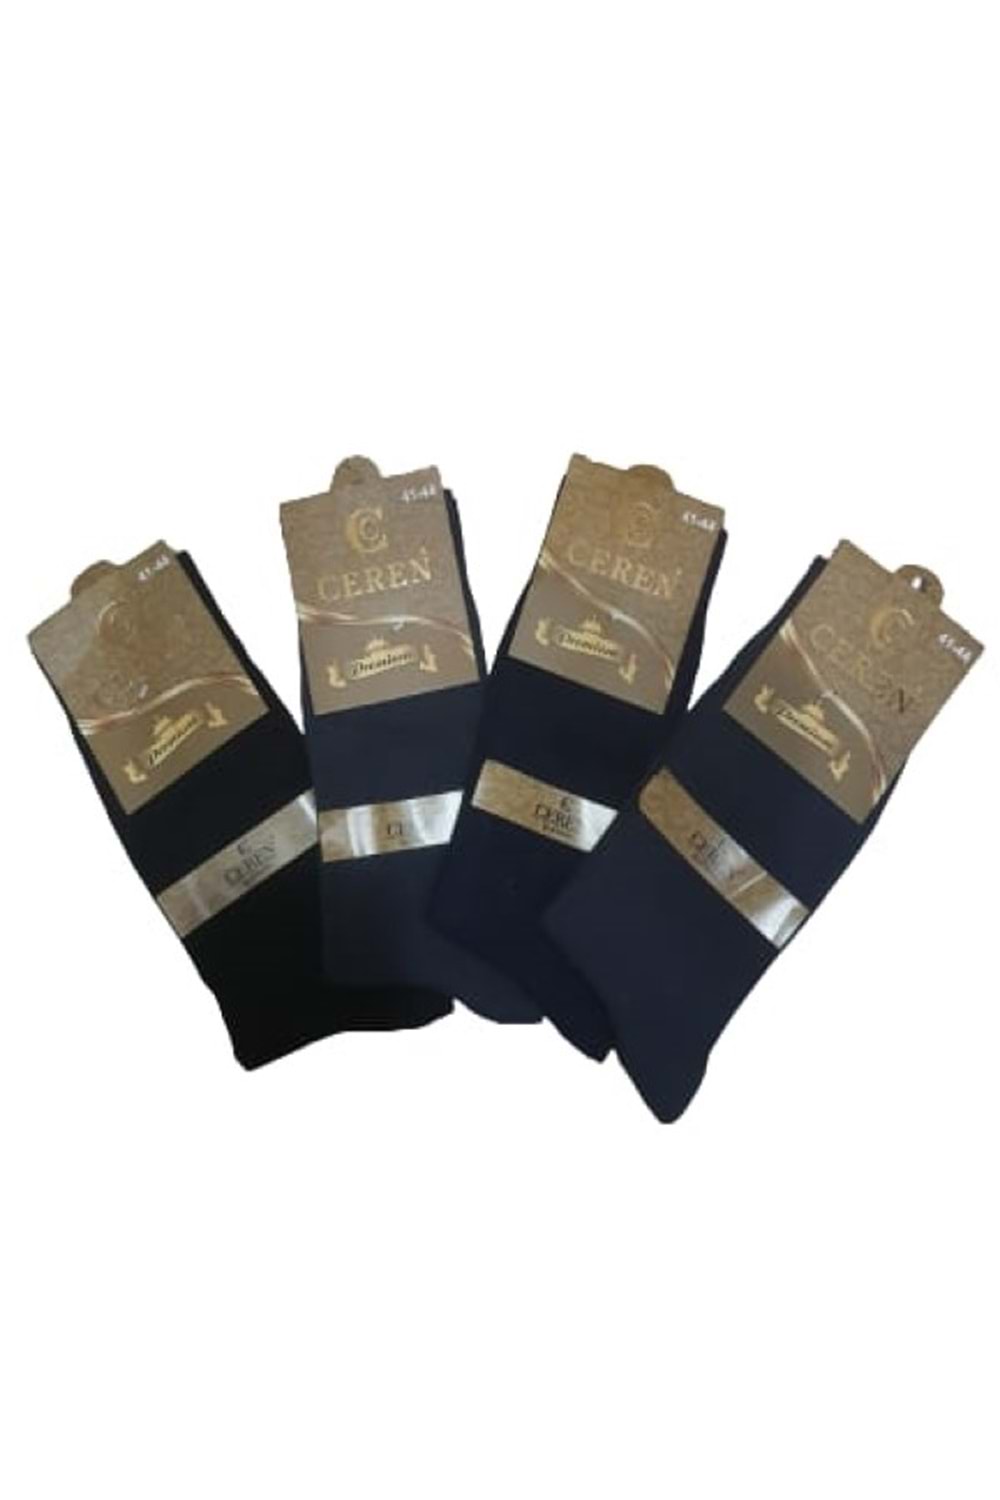 Ceren Erkek Bambu Premium Classic Çorap (4 Adet) C 00274 - Karışık Renkli - 41-44